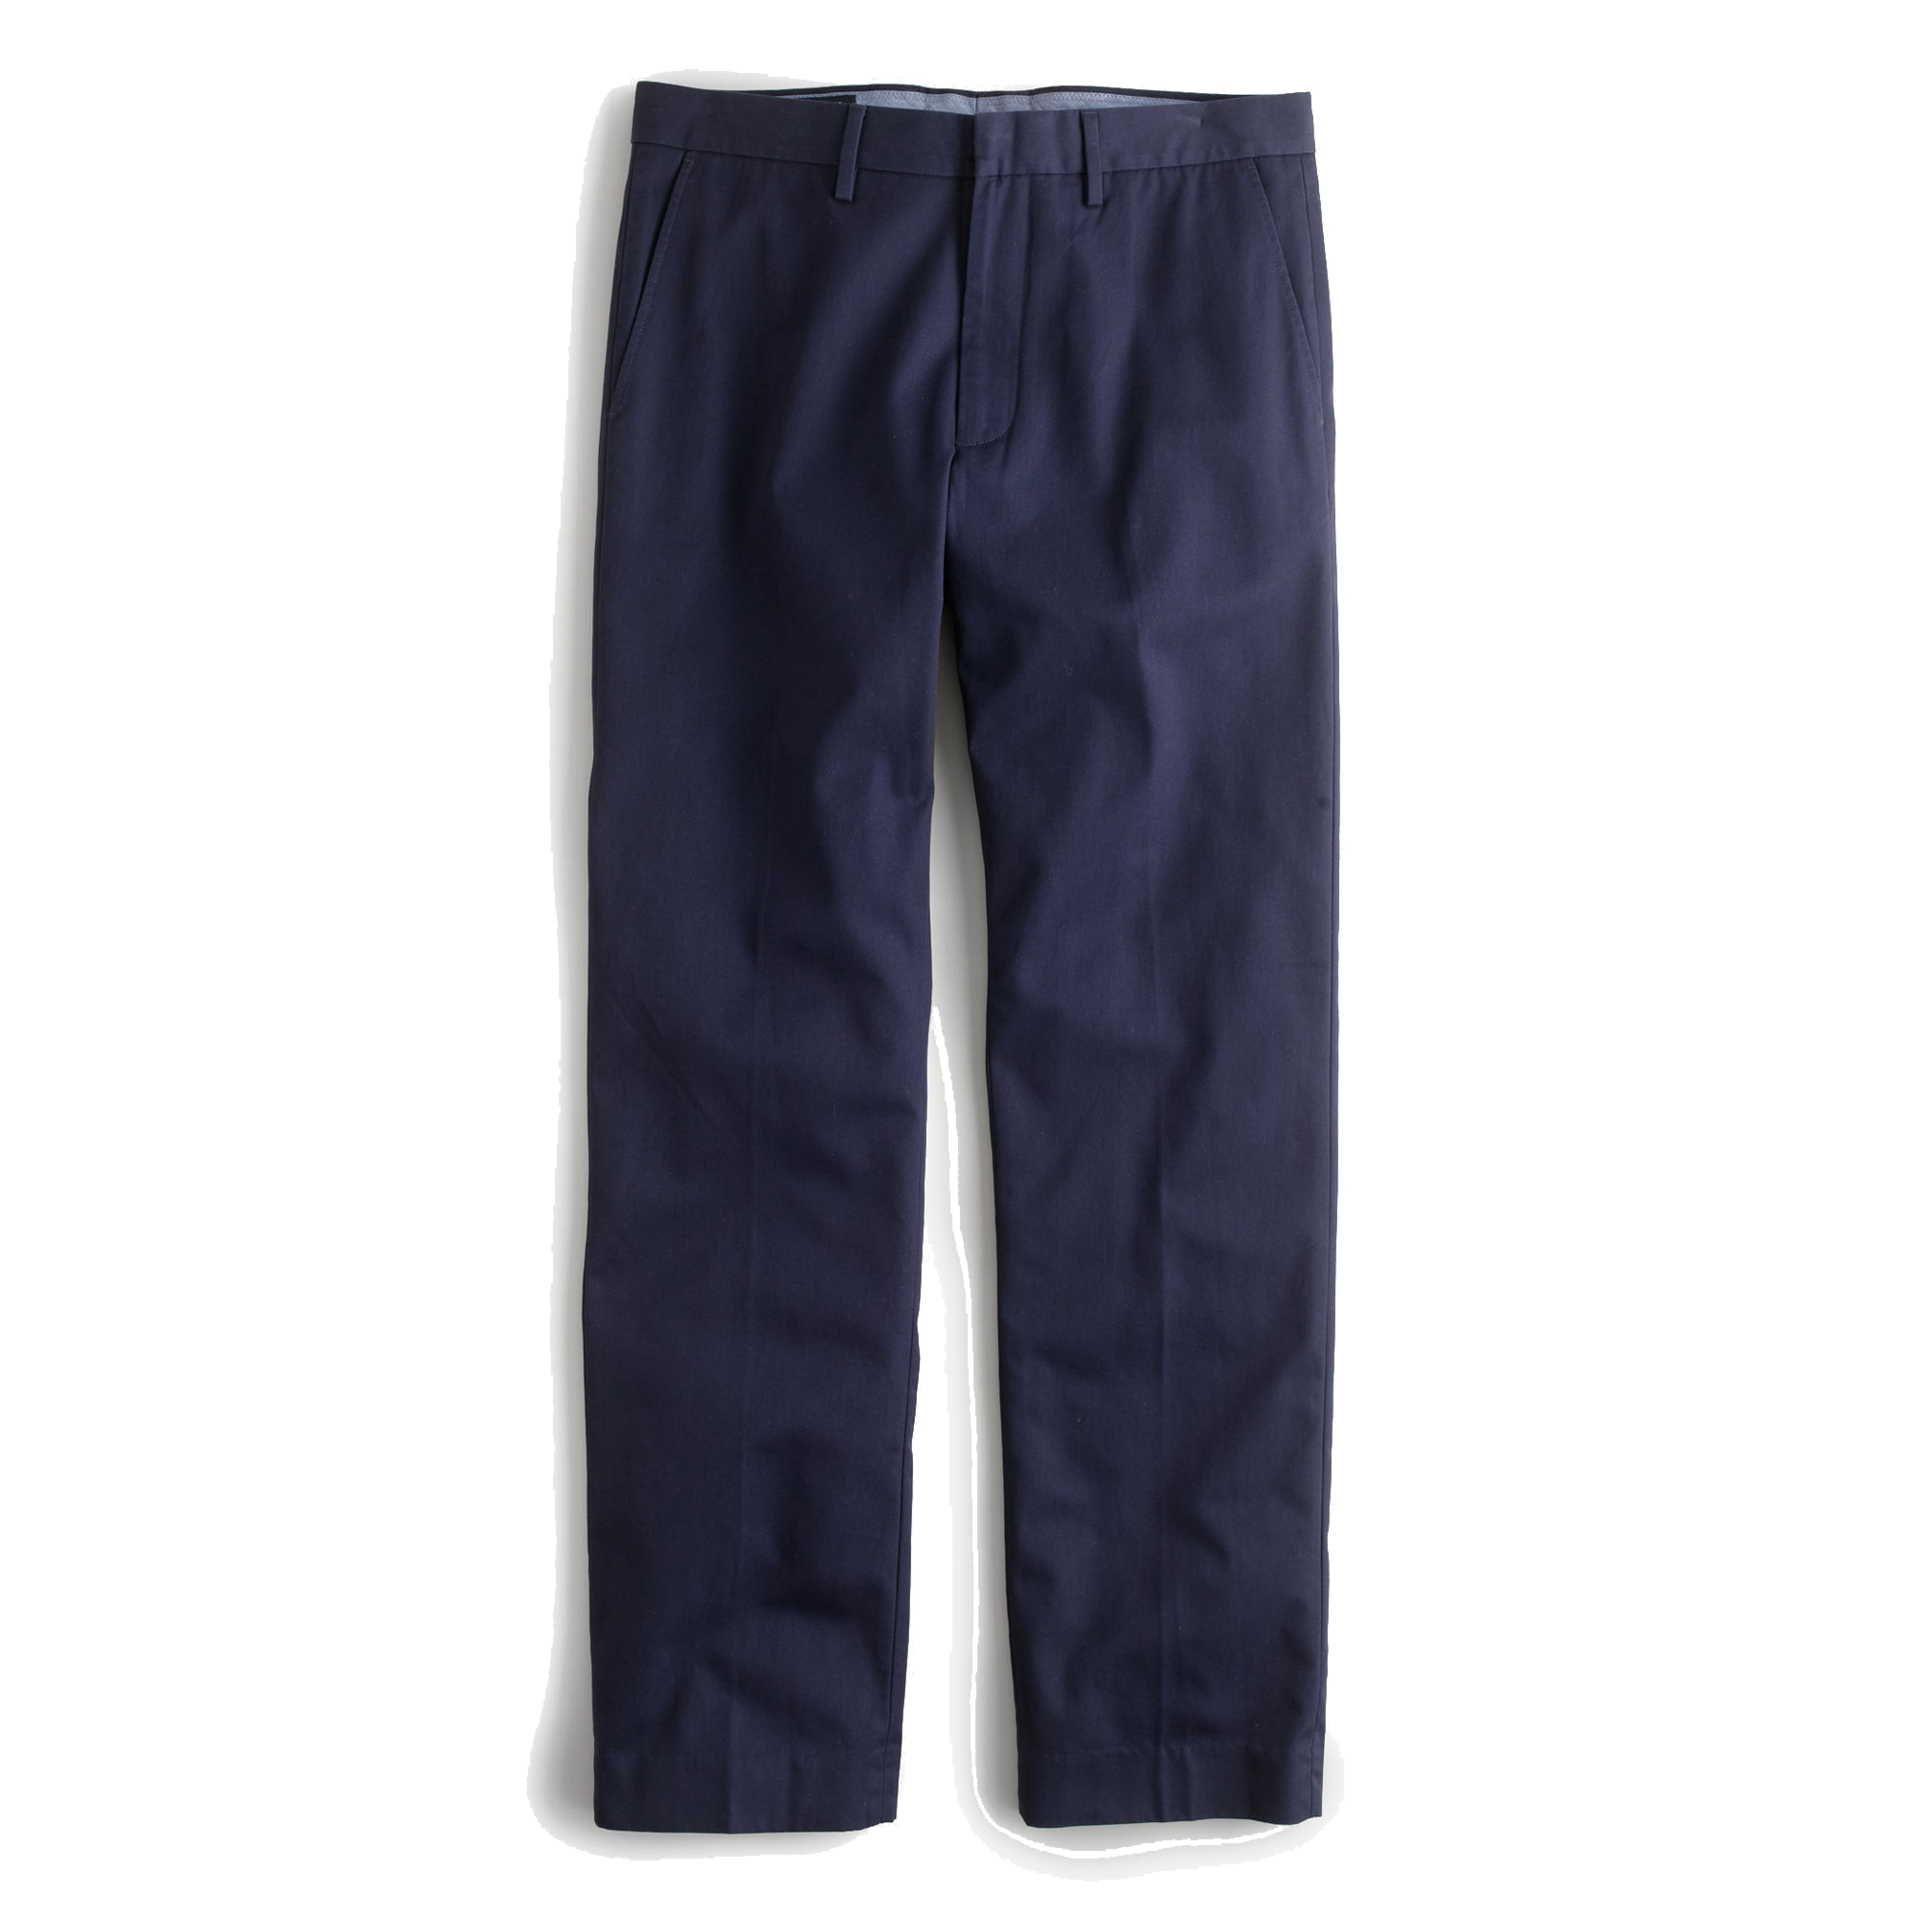 Capri pants Clothing Suit Jeans - suit png download - 1920*1920 - Free ...